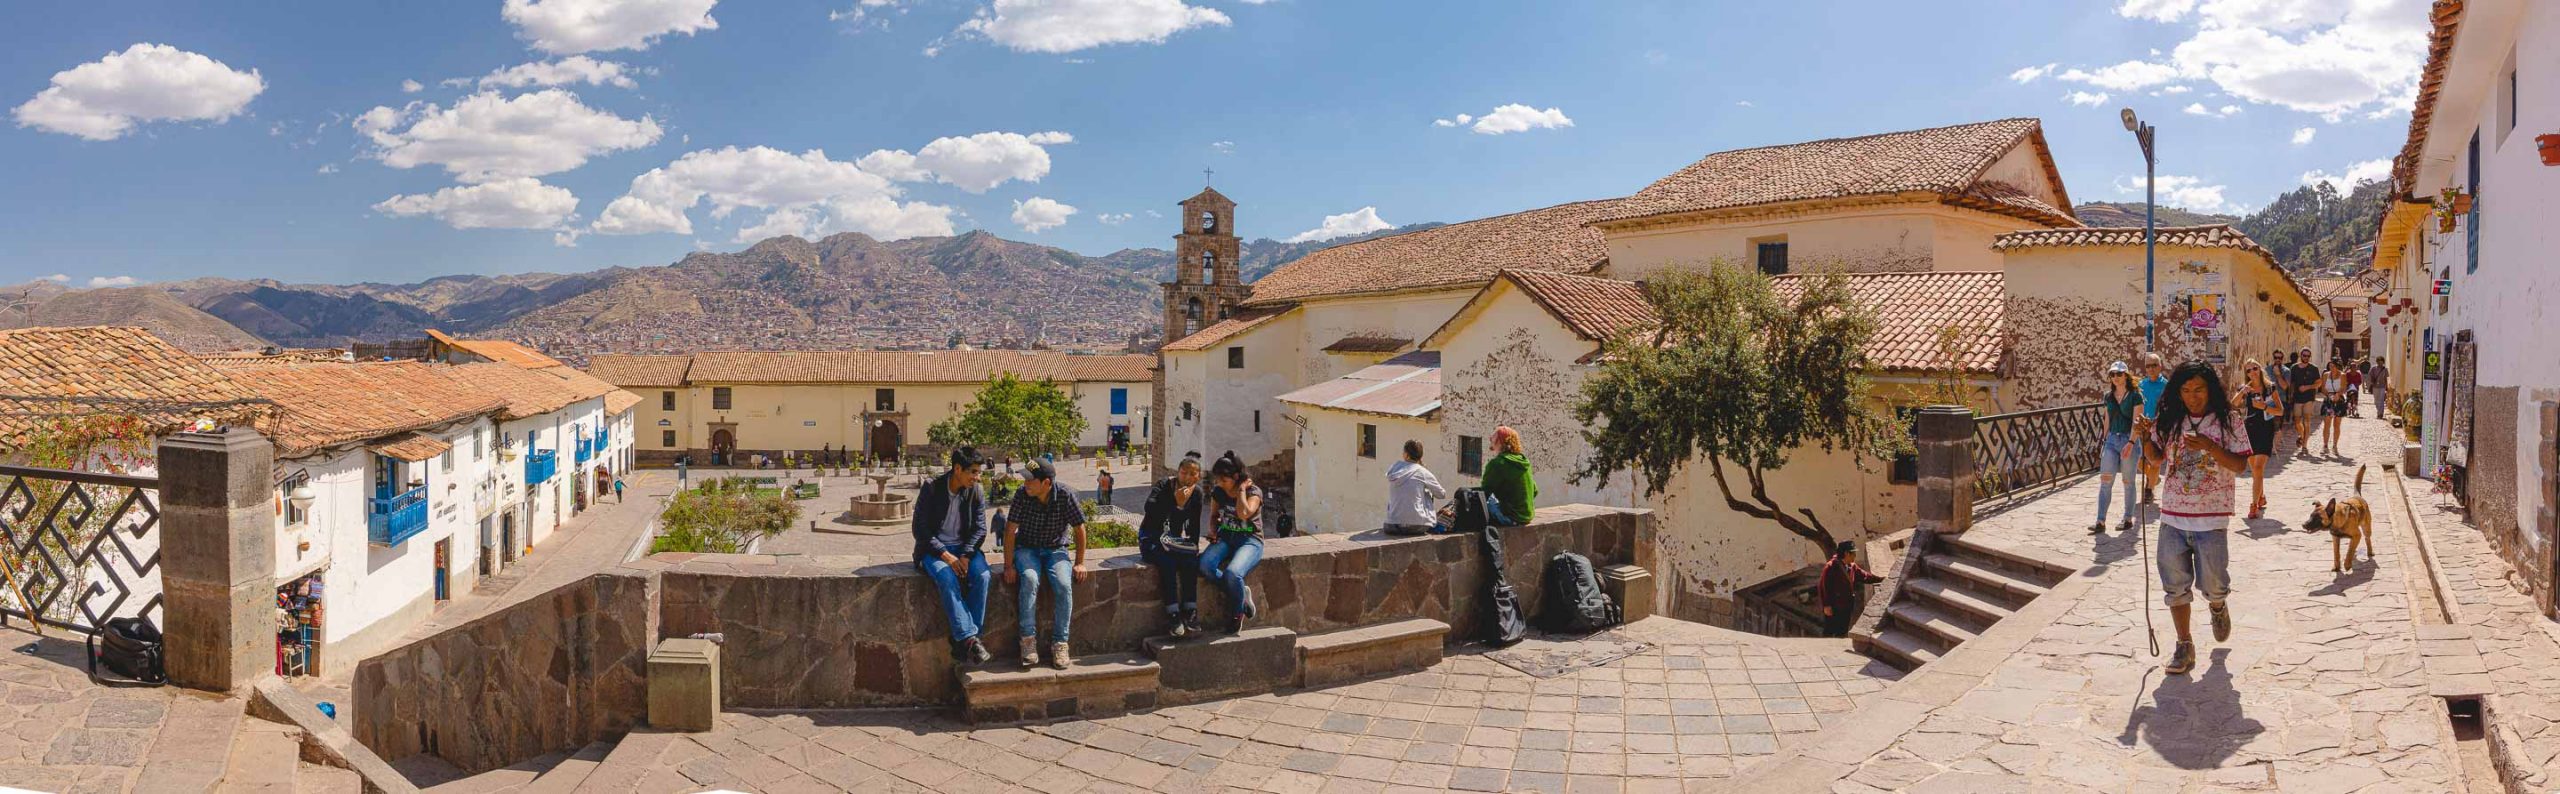 Peru: Cusco Panoramic